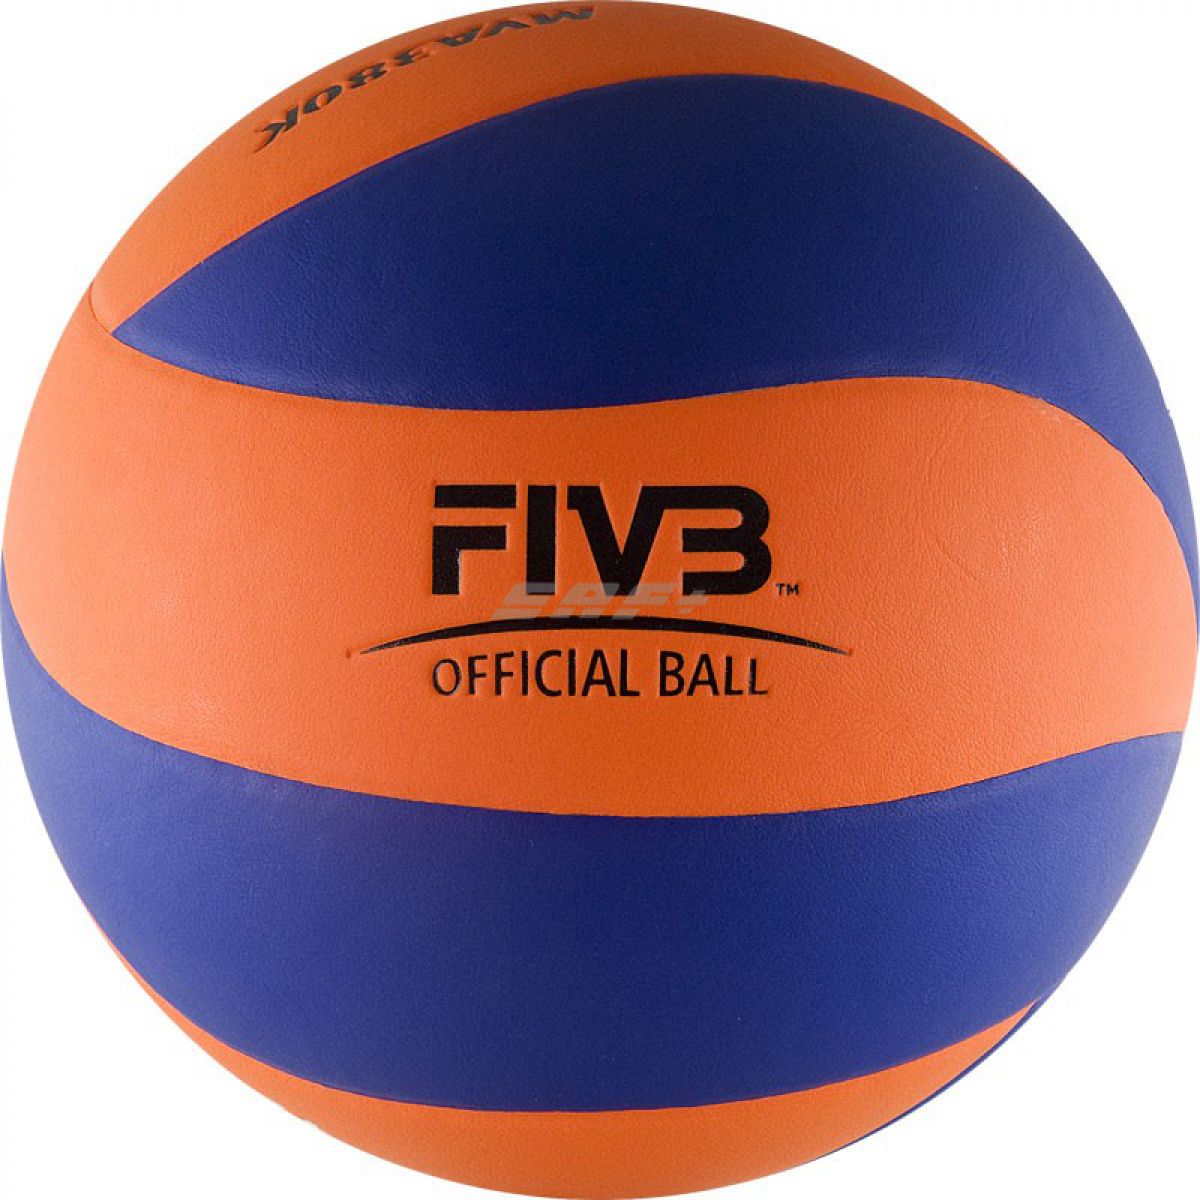 Мяч волейбольный Mikasa MVA380K-OBL